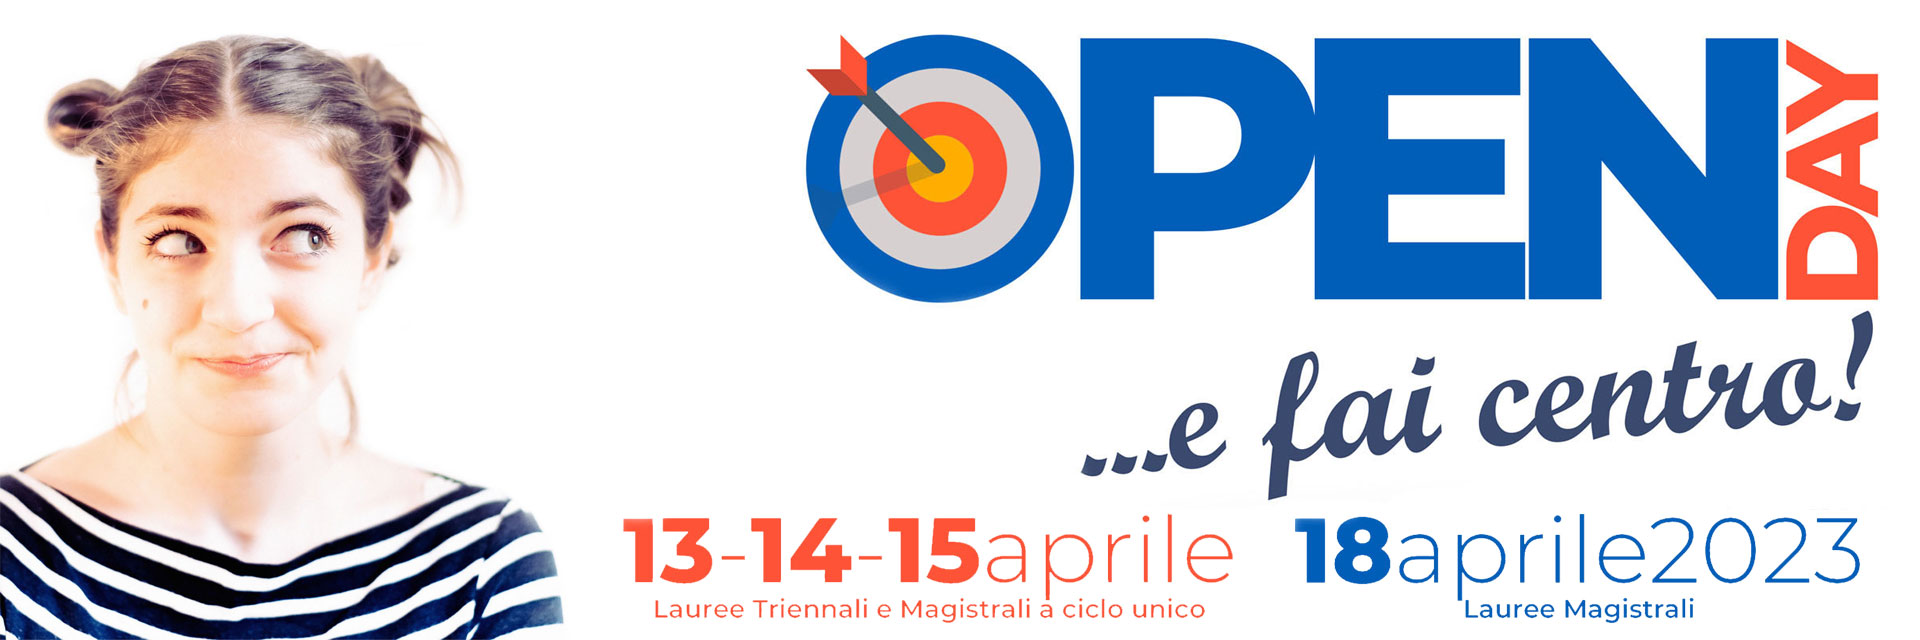 Open Day ... e fai centro! 13-14-15 aprile: Lauree Triennali e Magistrali a ciclo unico - 18 aprile 2023 Lauree Magistrali